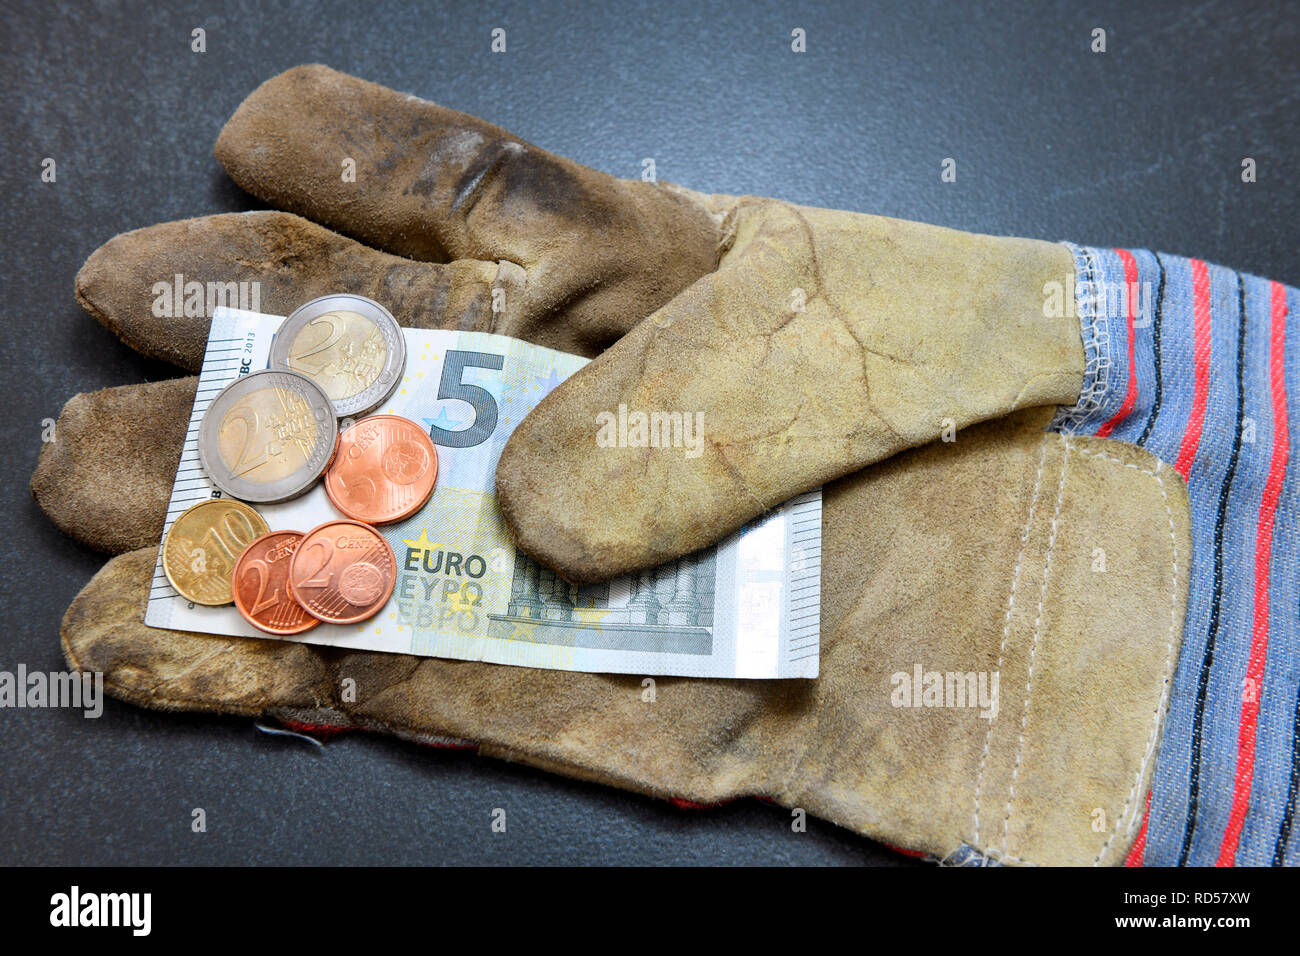 Der Handschuh mit 9,19 Euro Mindestlohn, Arbeitshandschuh mit 9,19 Euro Mindestlohn Stockfoto